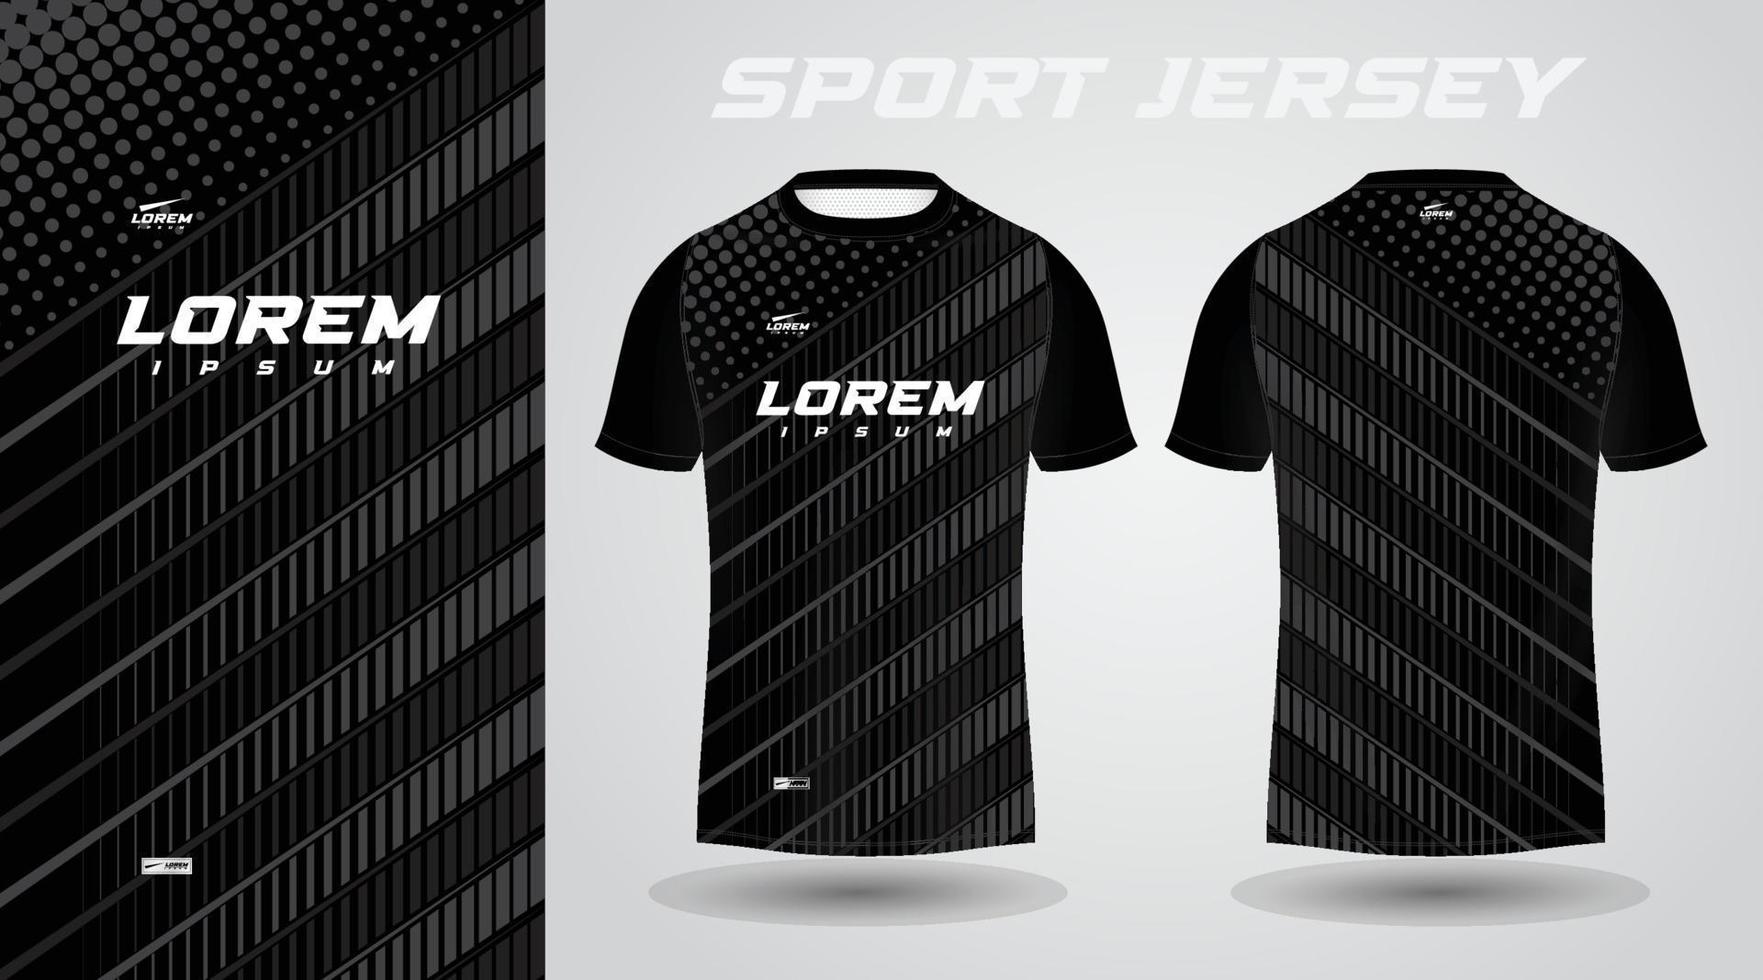 negro fútbol jersey o fútbol americano jersey modelo diseño para ropa de deporte. fútbol americano camiseta Bosquejo vector